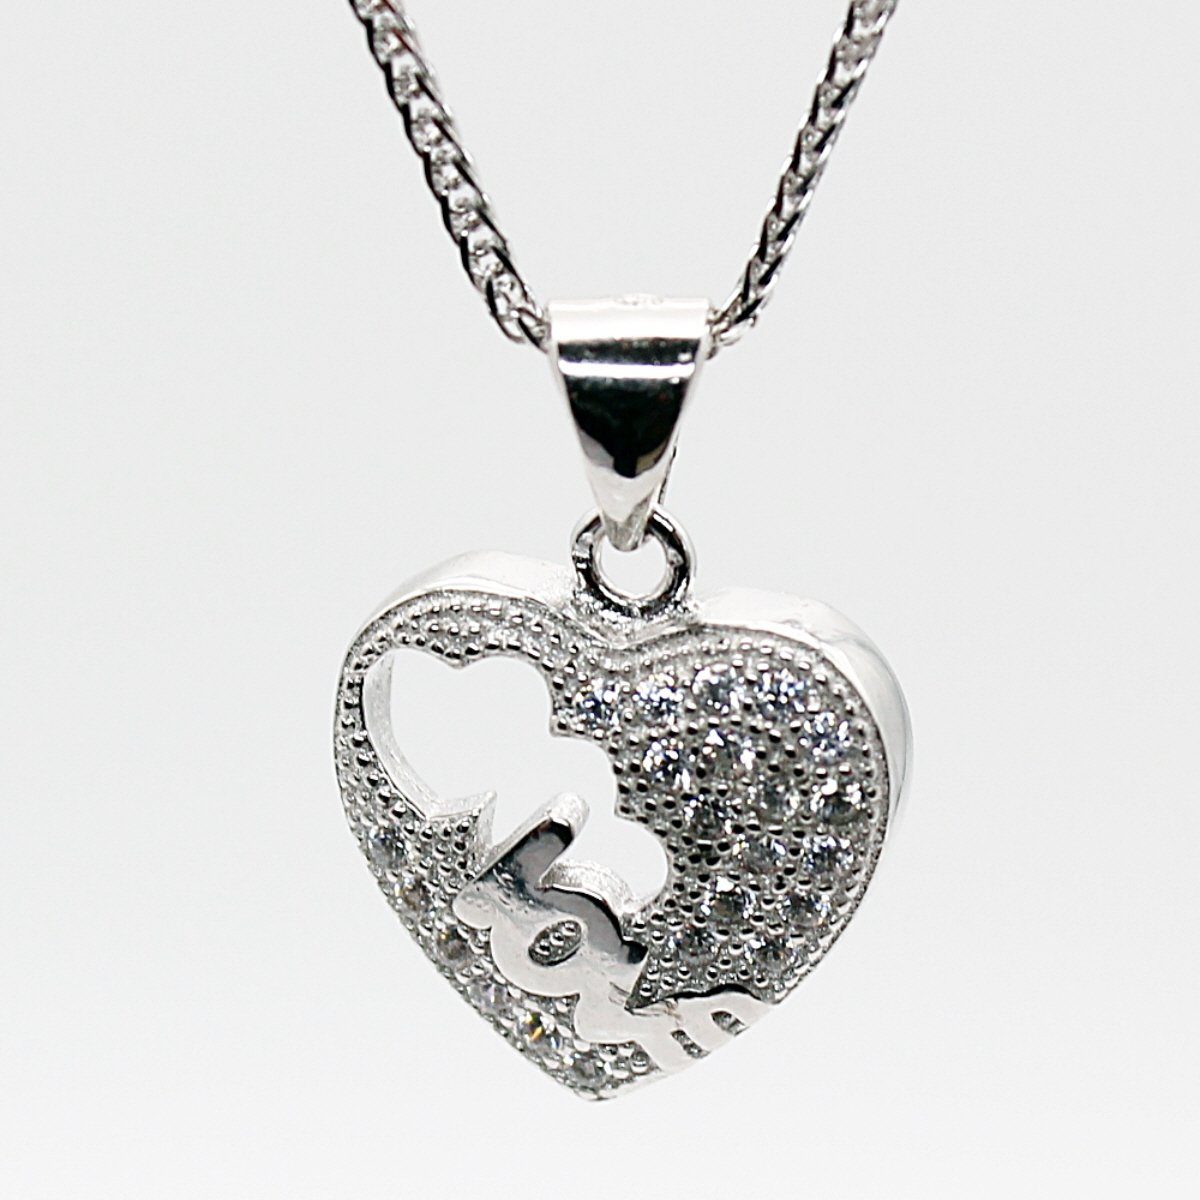 ELLAWIL Kette mit Anhänger Herzkette Silberkette Kette mit Herz Anhänger mit Love-Inschrift (Kettenlänge 40 cm, Sterling Silber 925), inklusive Geschenkschachtel